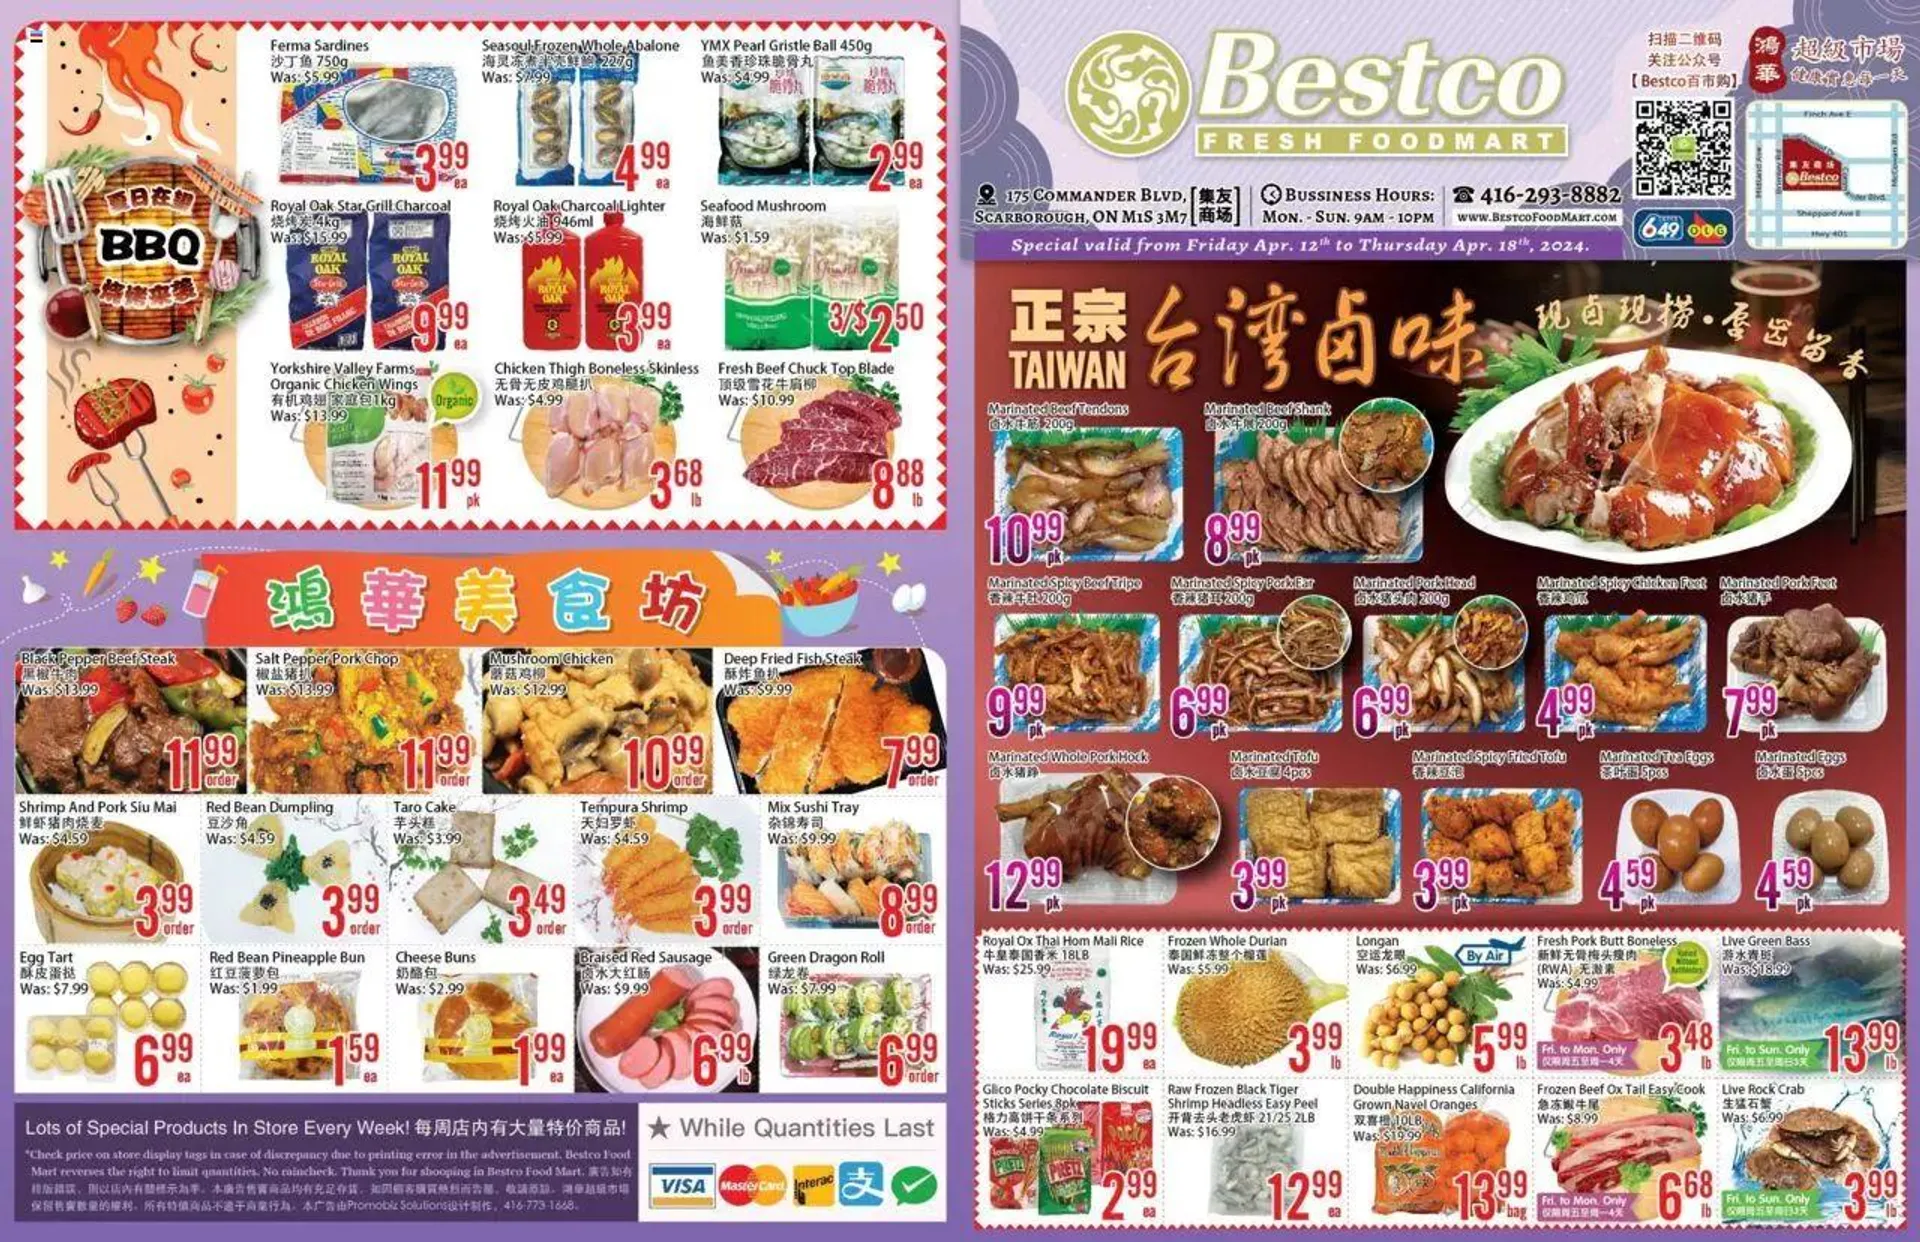 Bestco Foodmart weekly flyer / circulaire - 0